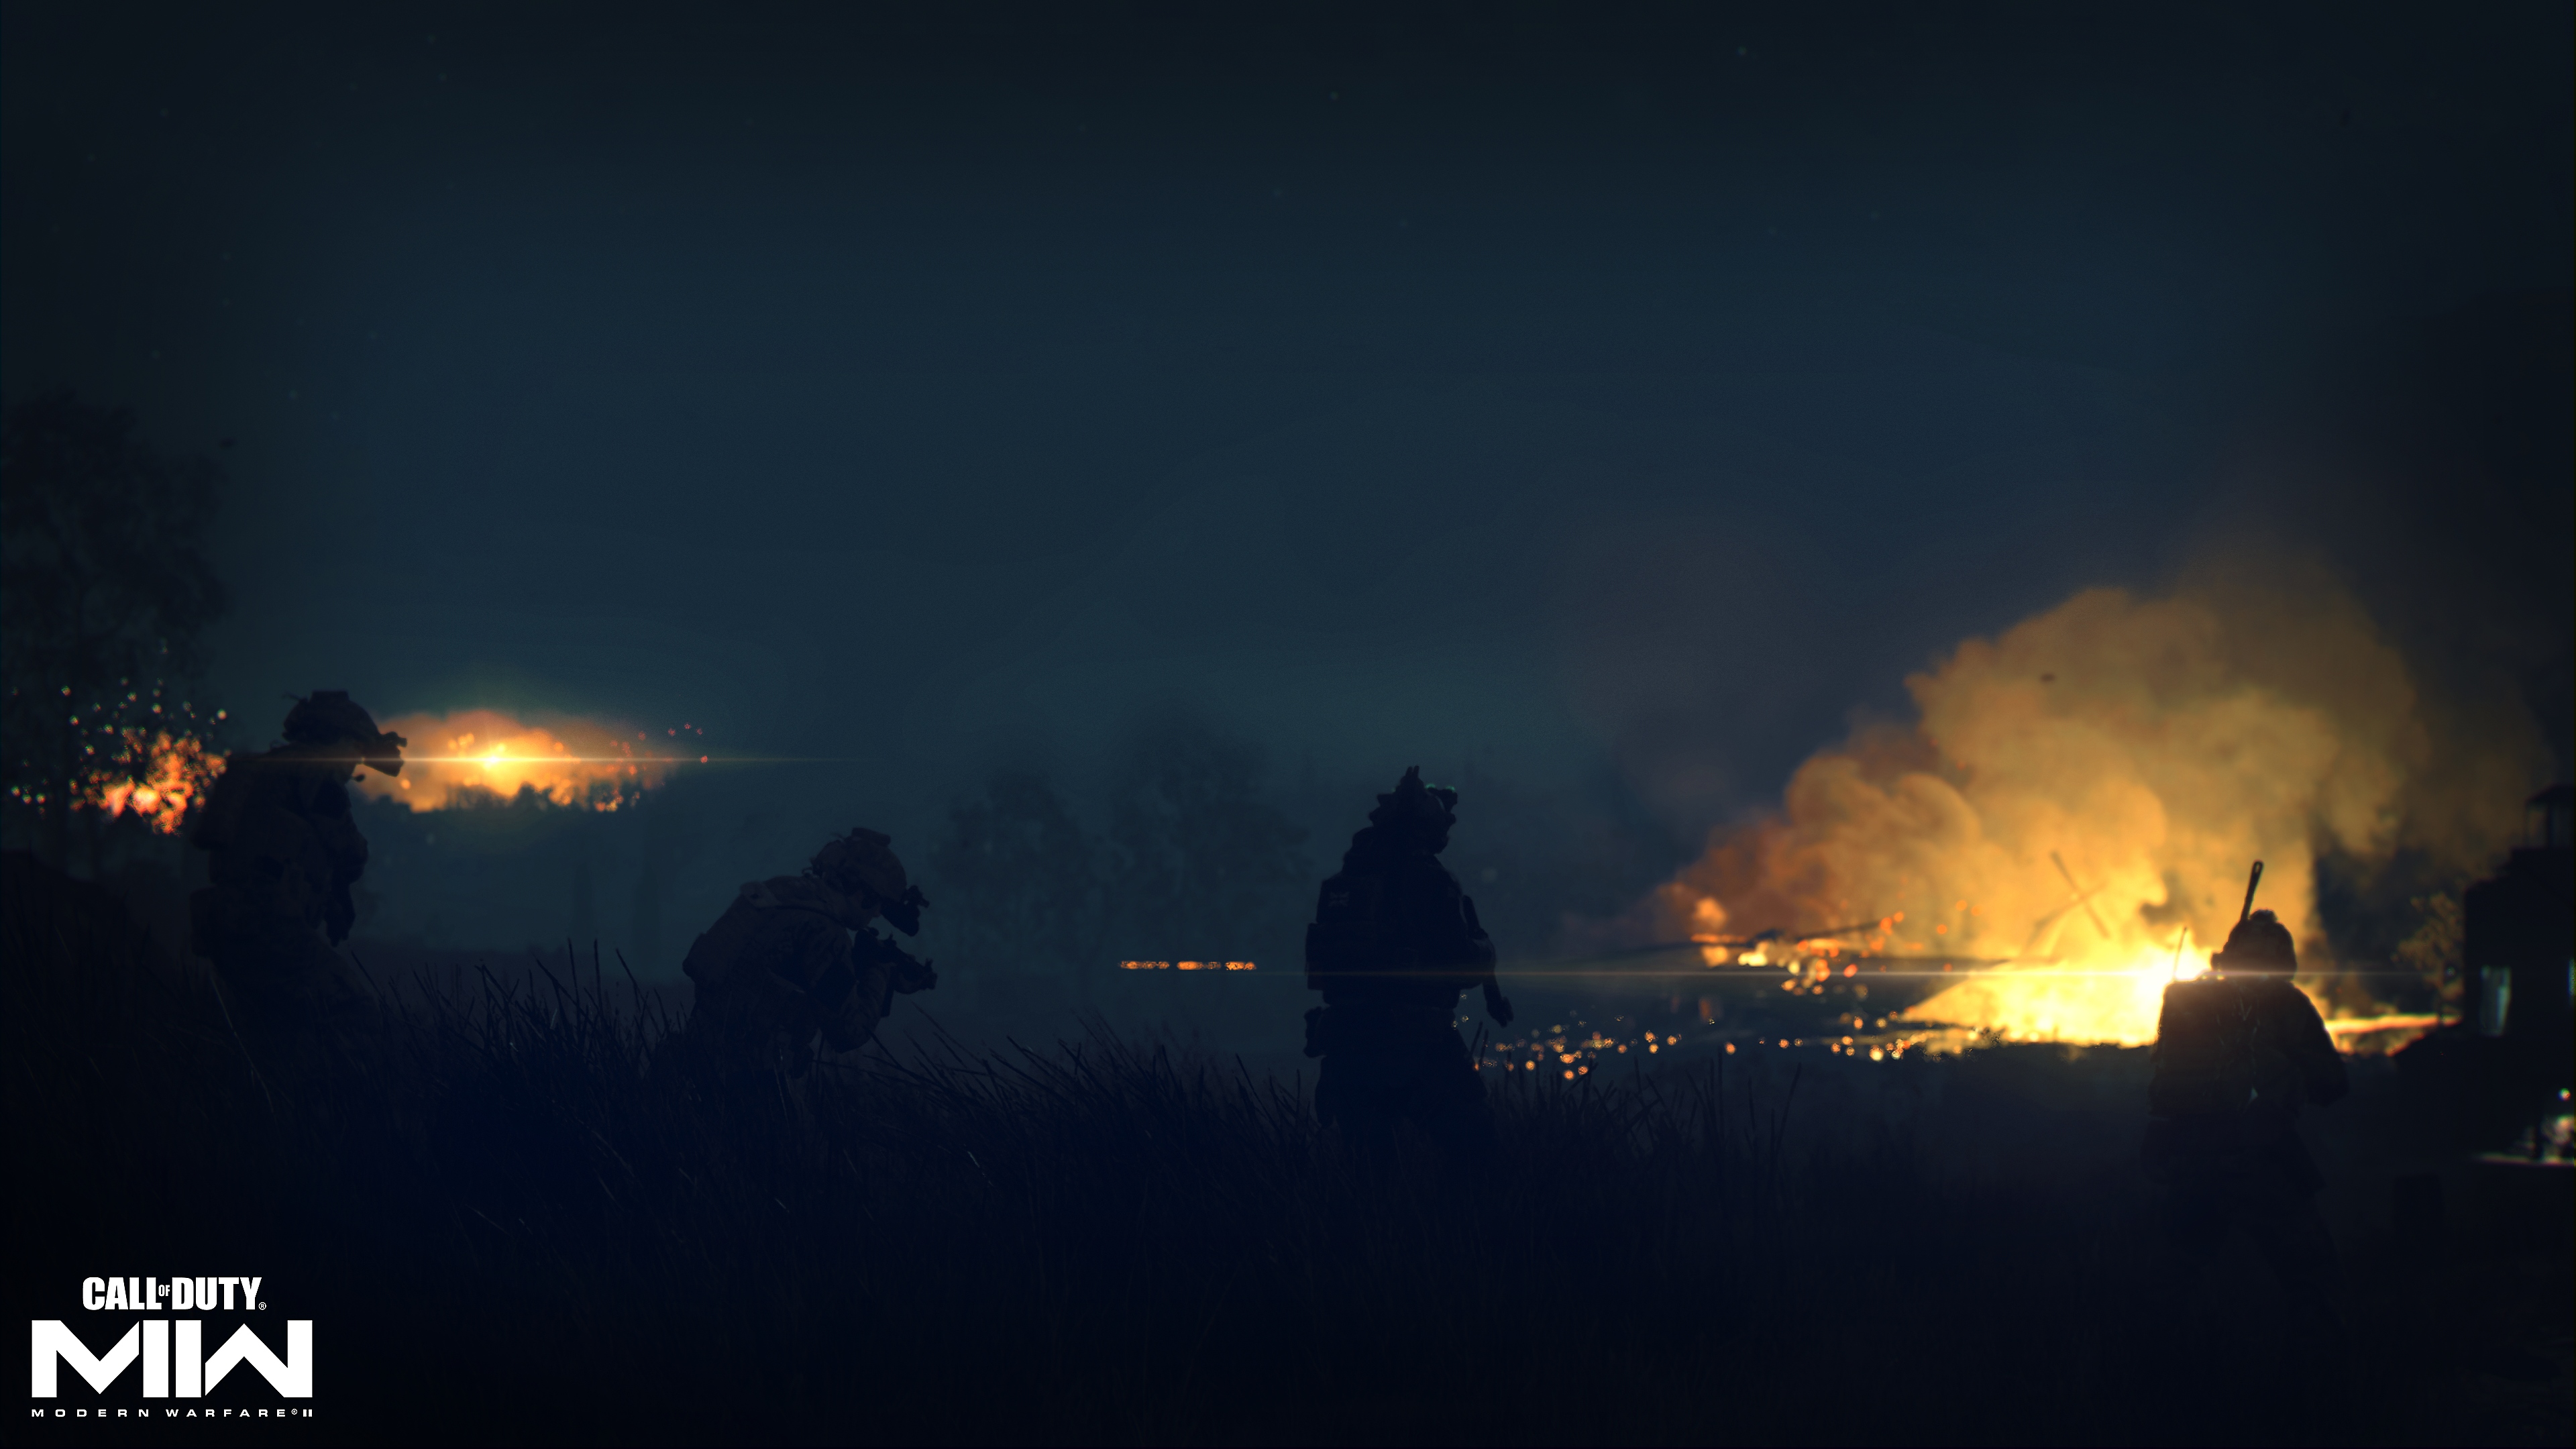 Call of Duty: Modern Warfare 2 2022 captura de pantalla enseñando fuego en la distancia en un paisaje oscuro